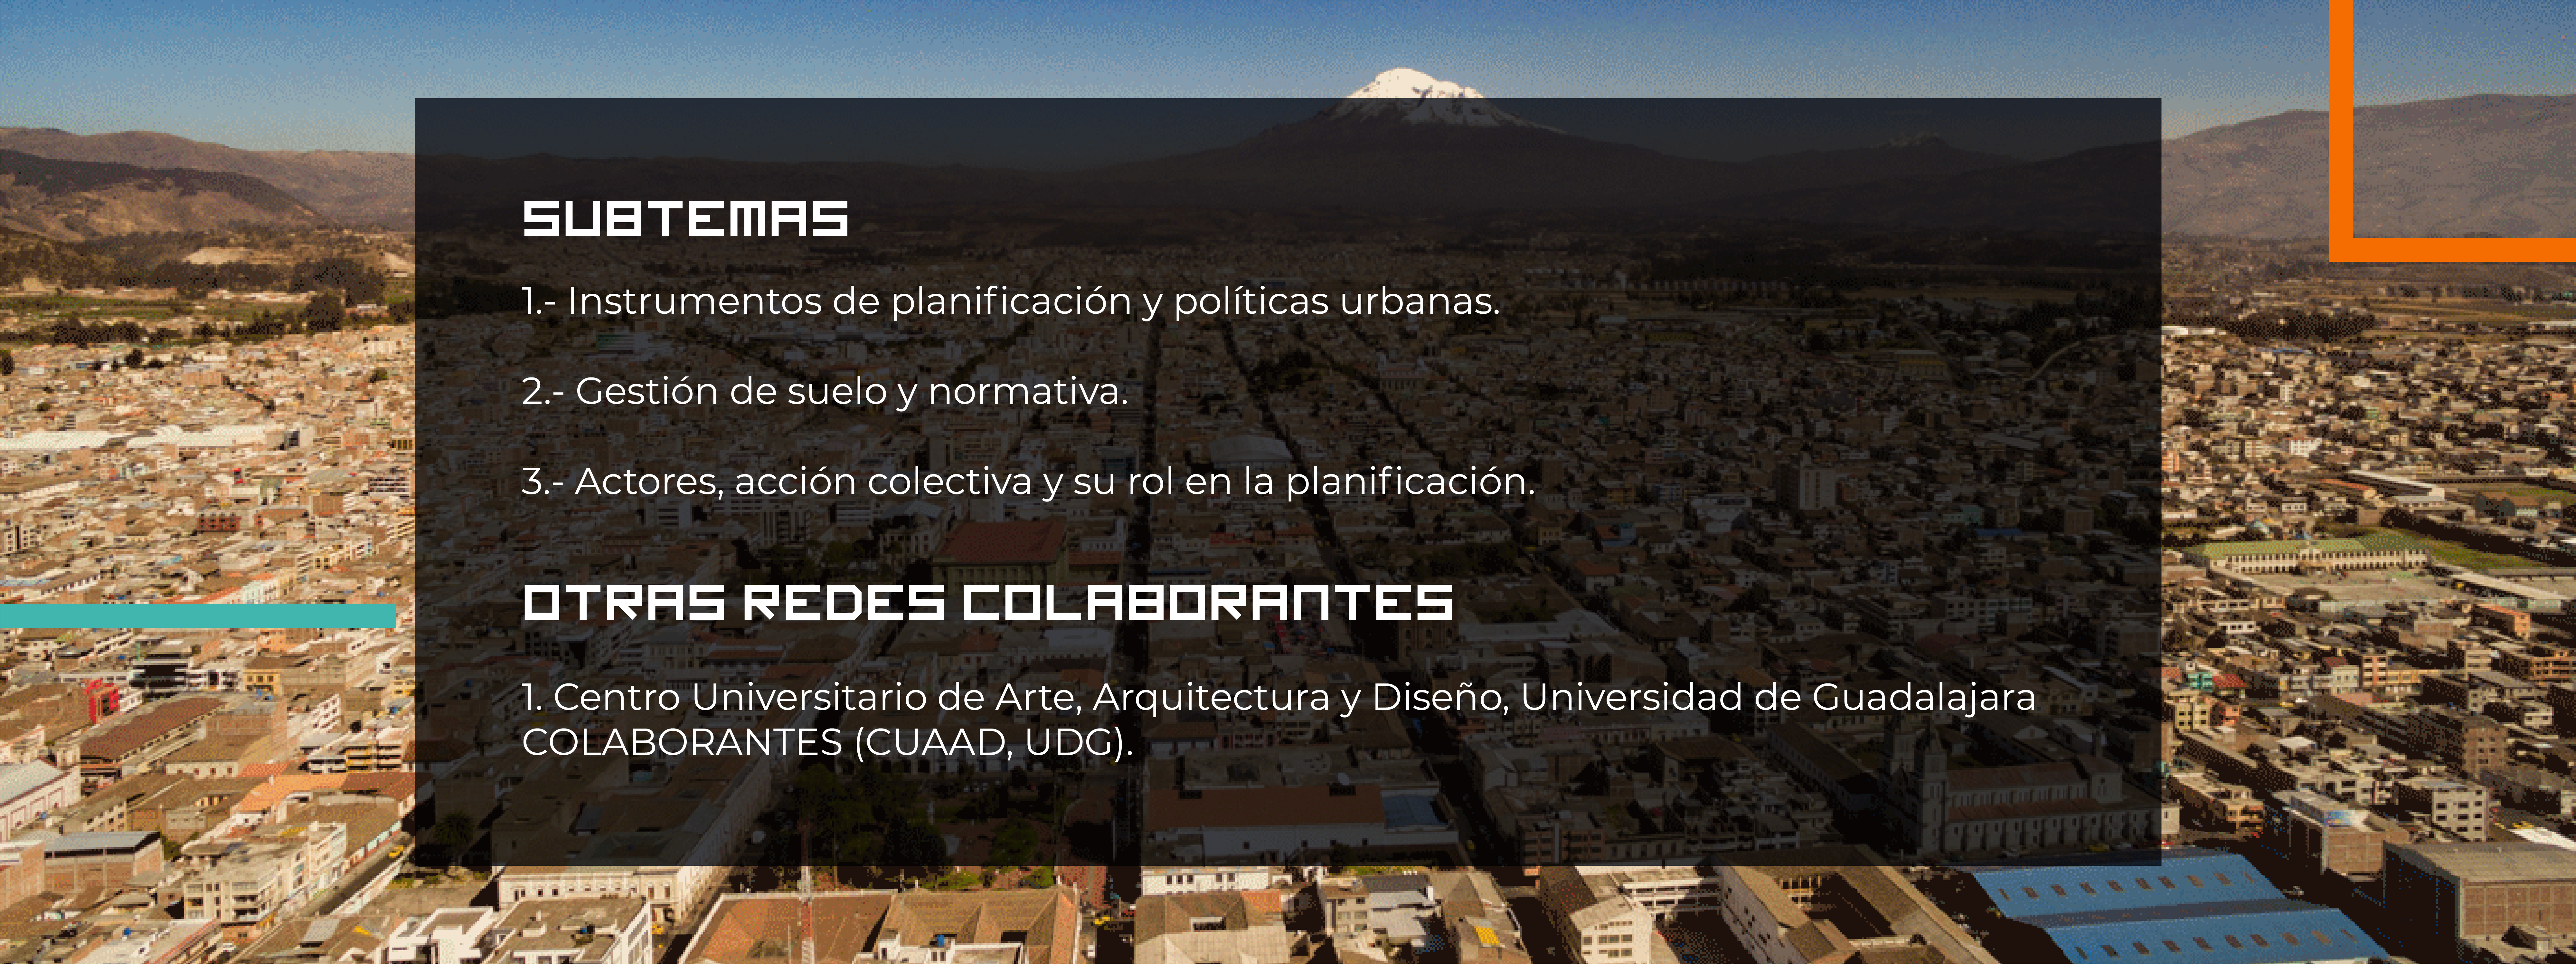 Arquitectura Quito mesas de Dibujo e implementos